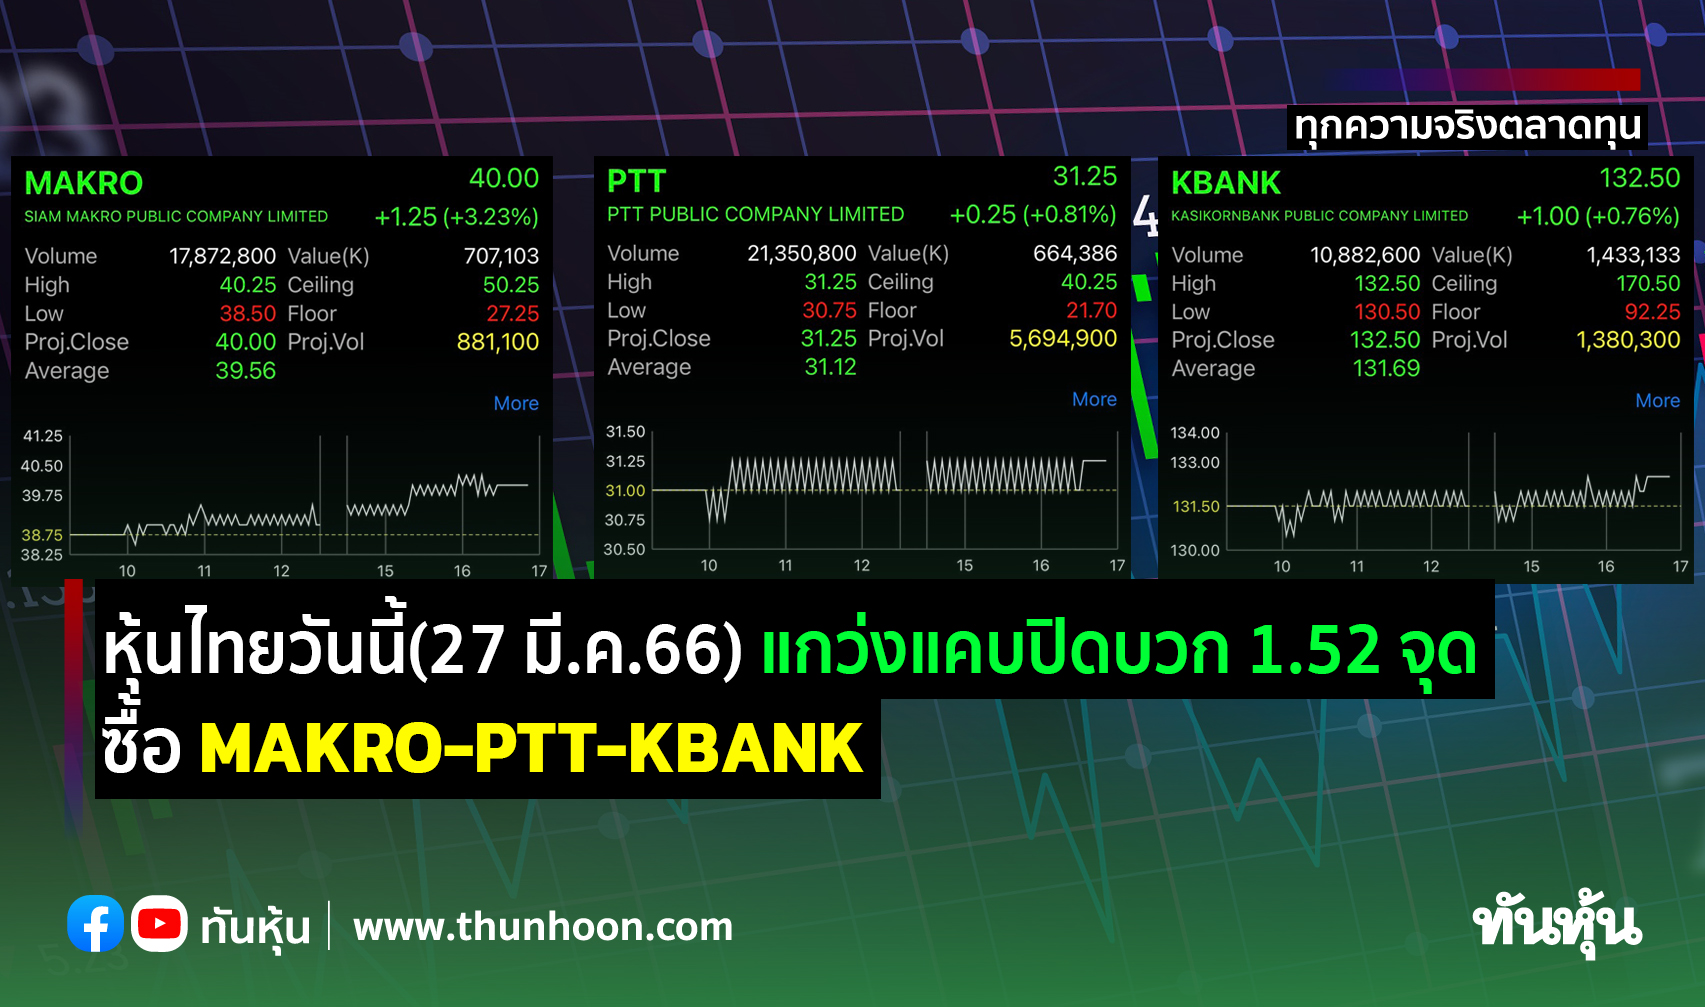 หุ้นไทยวันนี้(27 มี.ค.66)แกว่งแคบปิดบวก 1.52 จุด ซื้อ MAKRO-PTT-KBANK